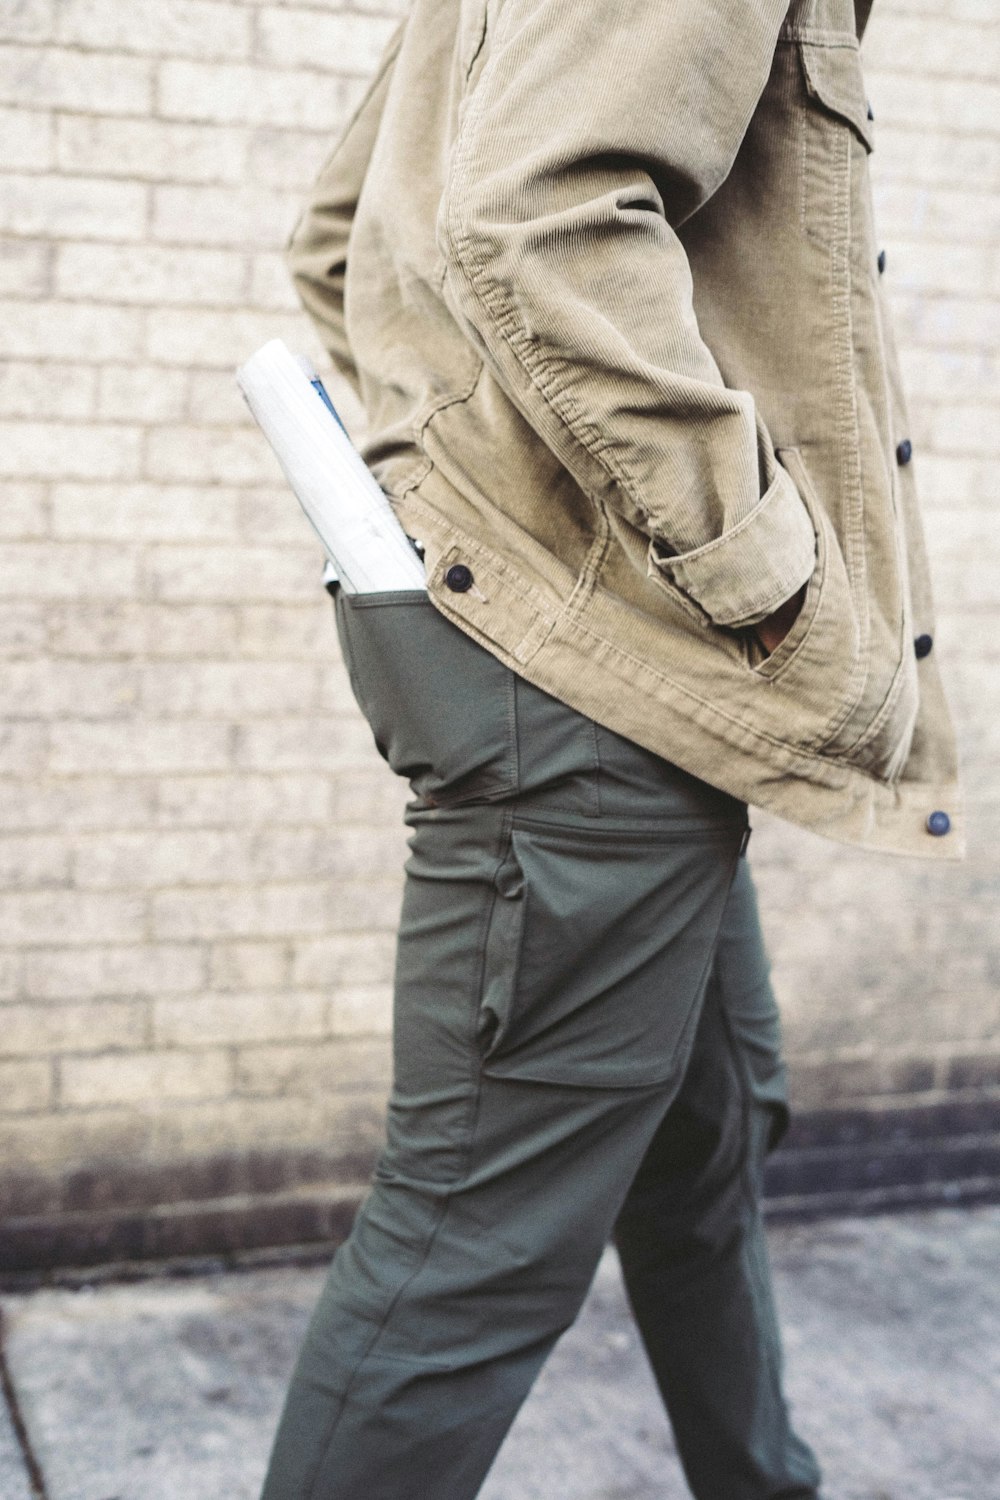 uomo che cammina con la mano sulla tasca della giacca con carta arrotolata sulla tasca posteriore dei pantaloni